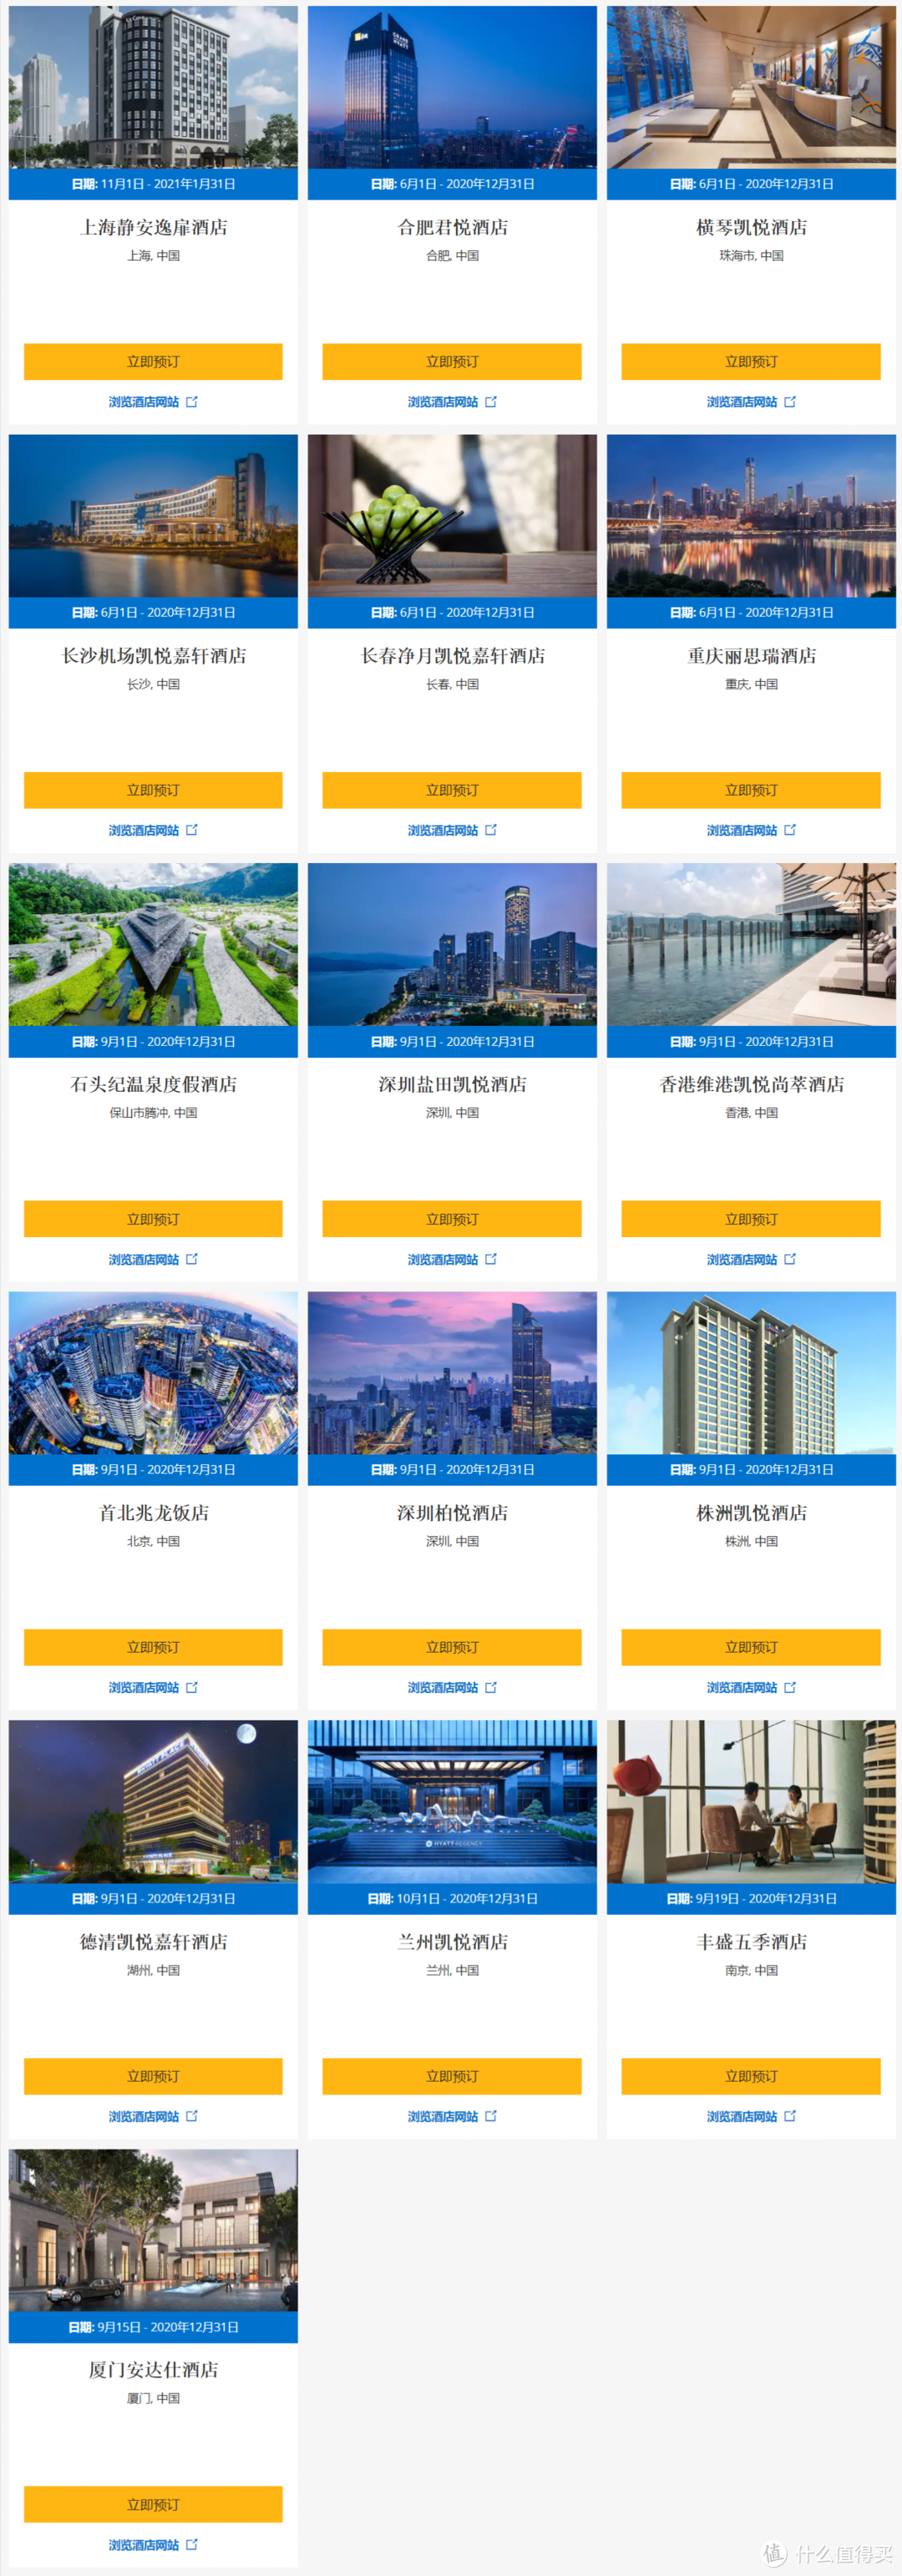 中国区的16家新开酒店，据说另外两家逸扉也有500分奖励